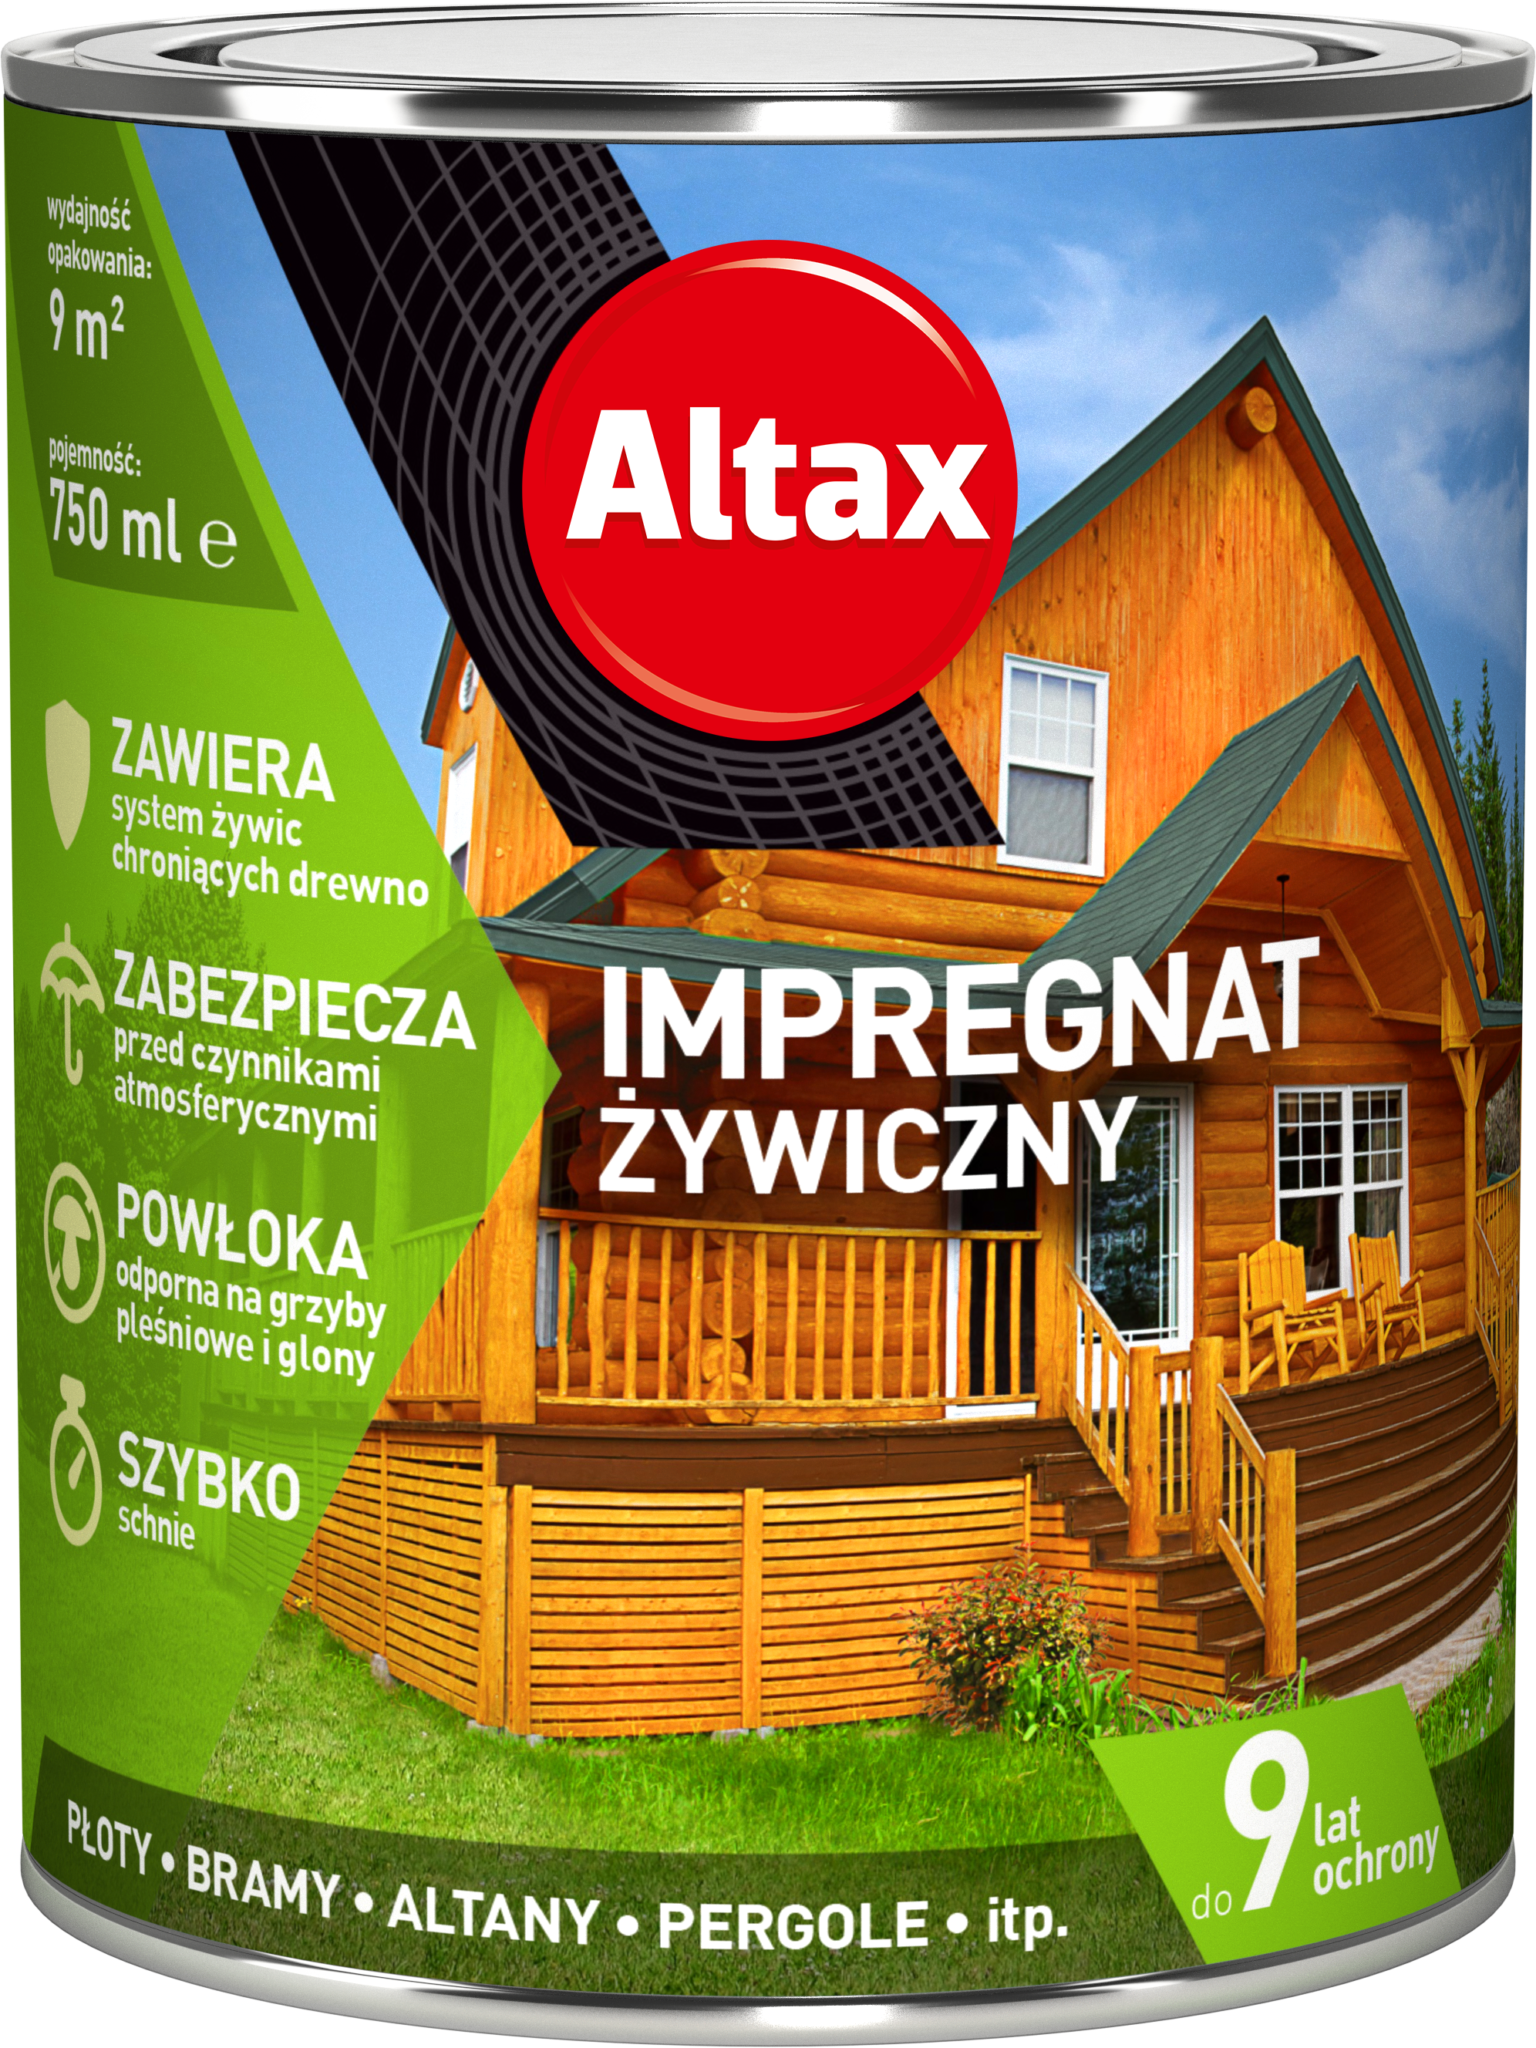 ALTAX-impregnat-zywiczny-750ml-01 (1)